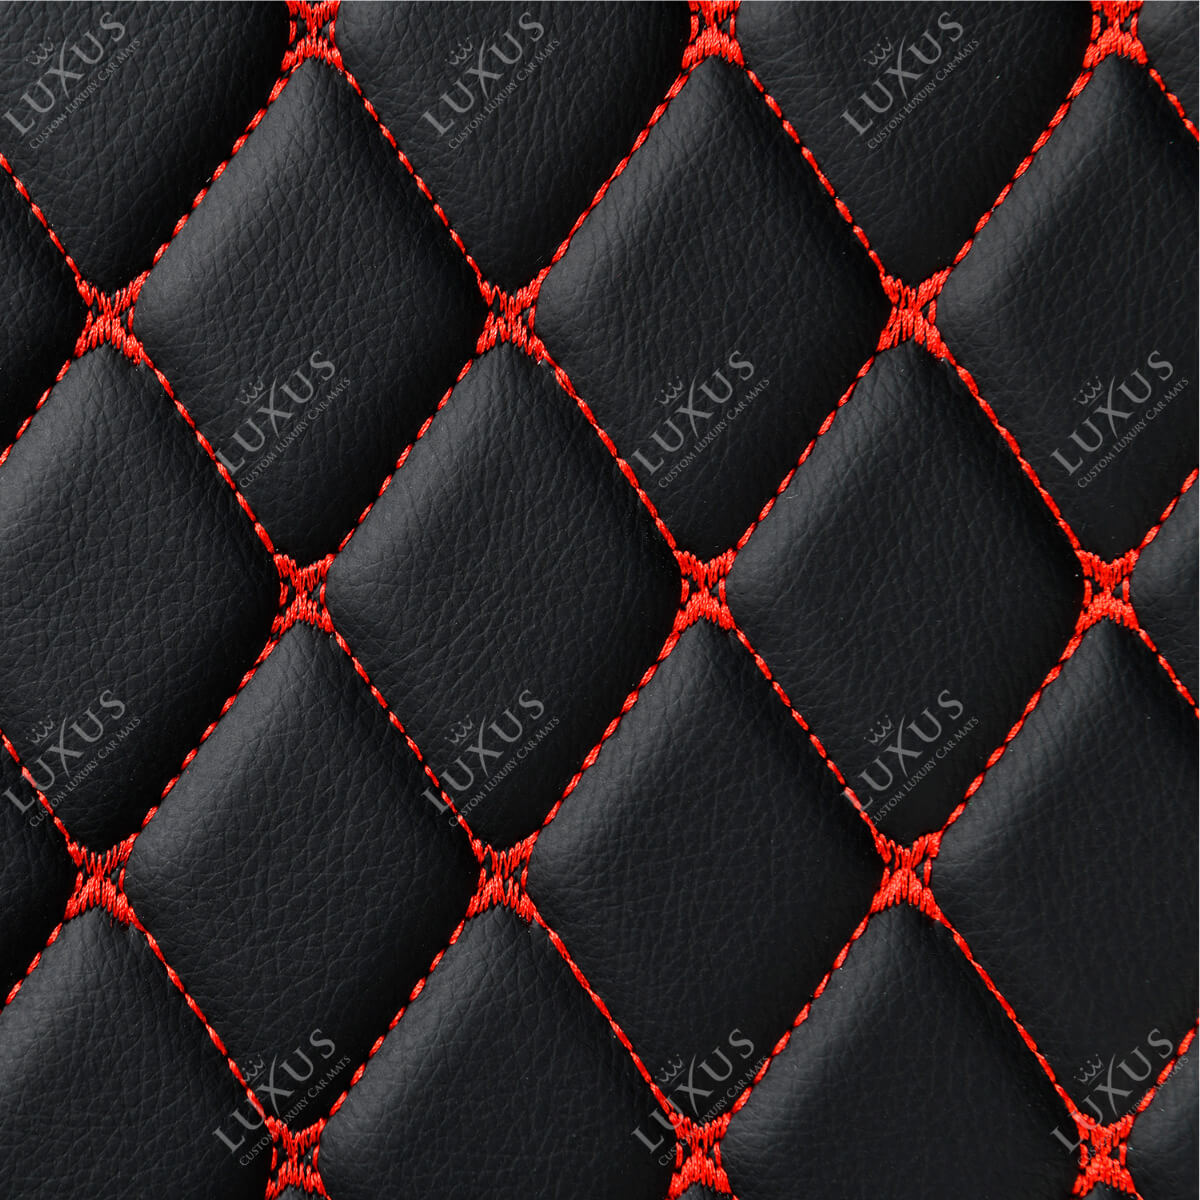 Luxus Car Mats™ – Luxus-Automatten-Set mit schwarzen und roten Nähten